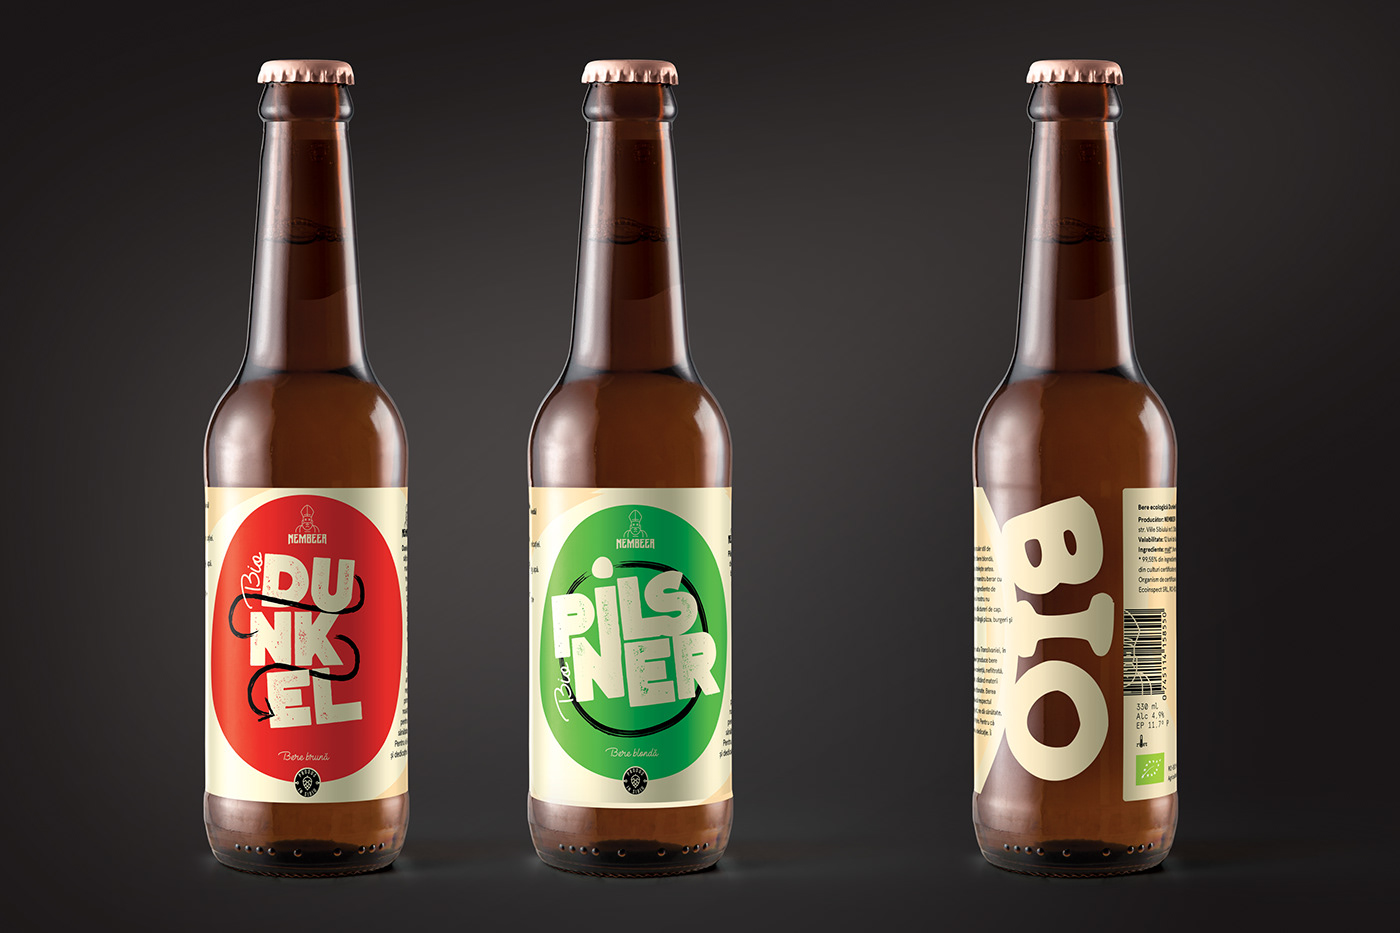 beer beer bottle bio green Label nembeer Packaging red romania sibiu